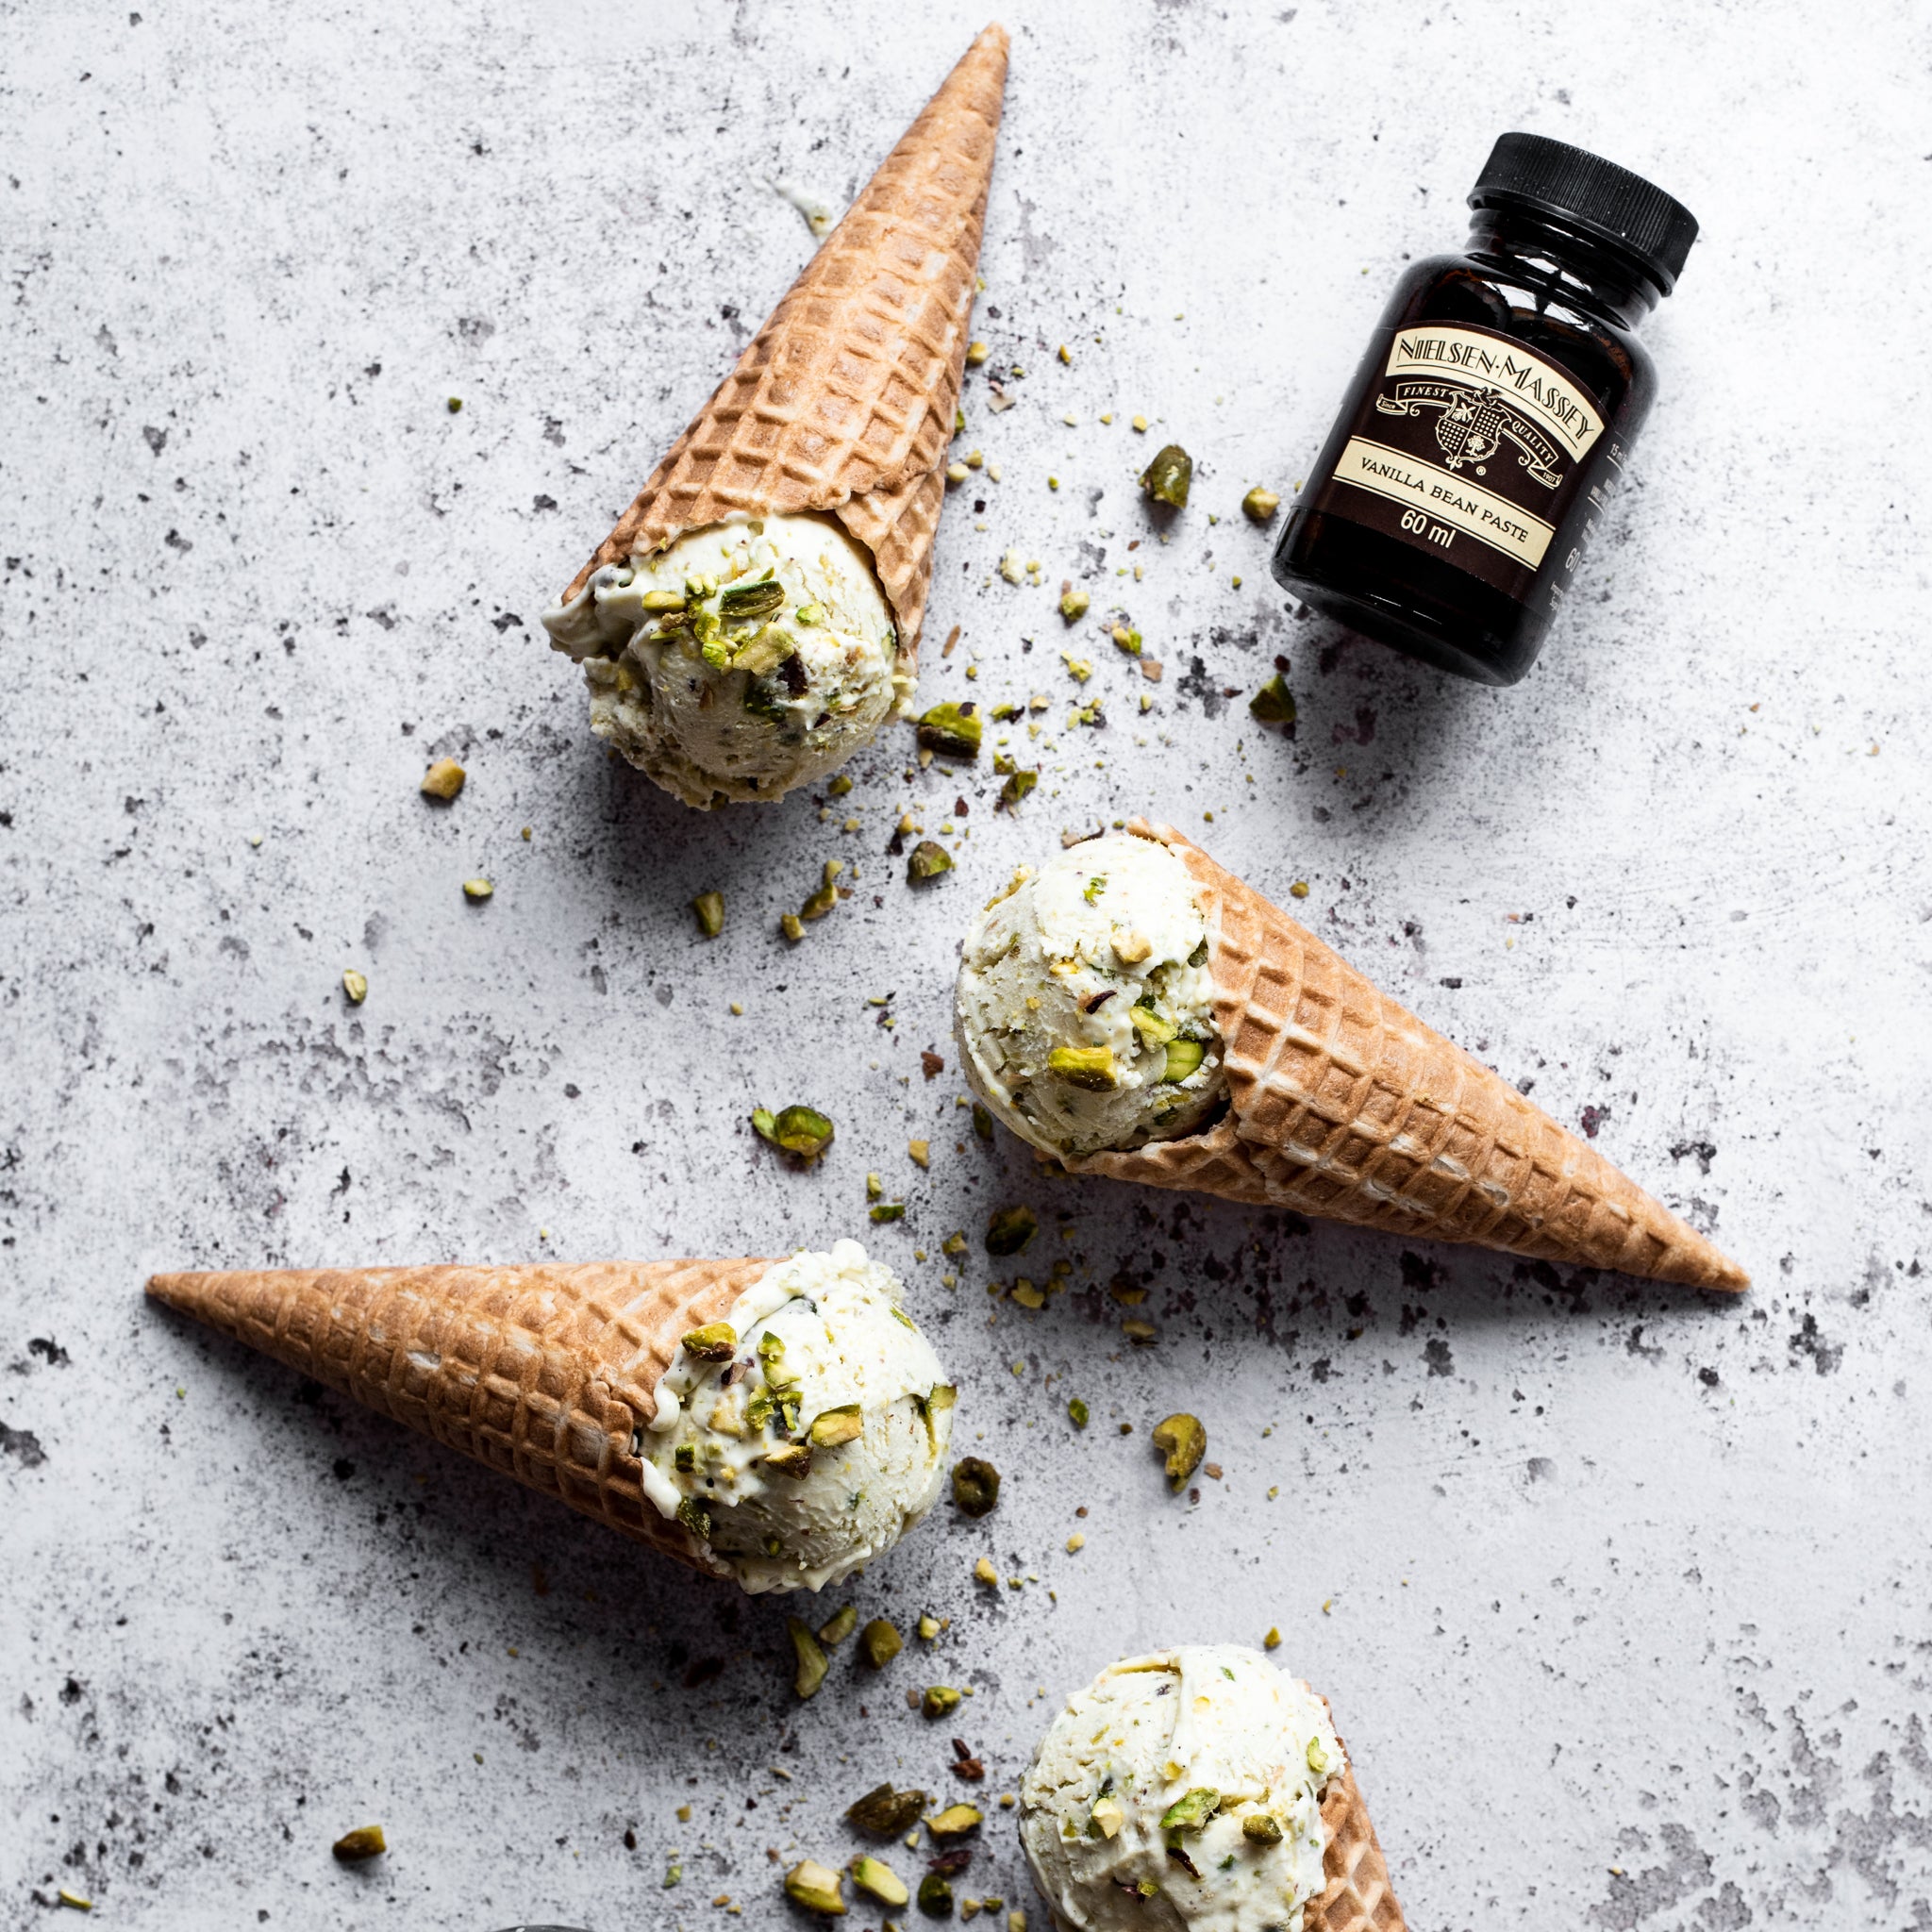 Homemade pistachio ice cream in cones